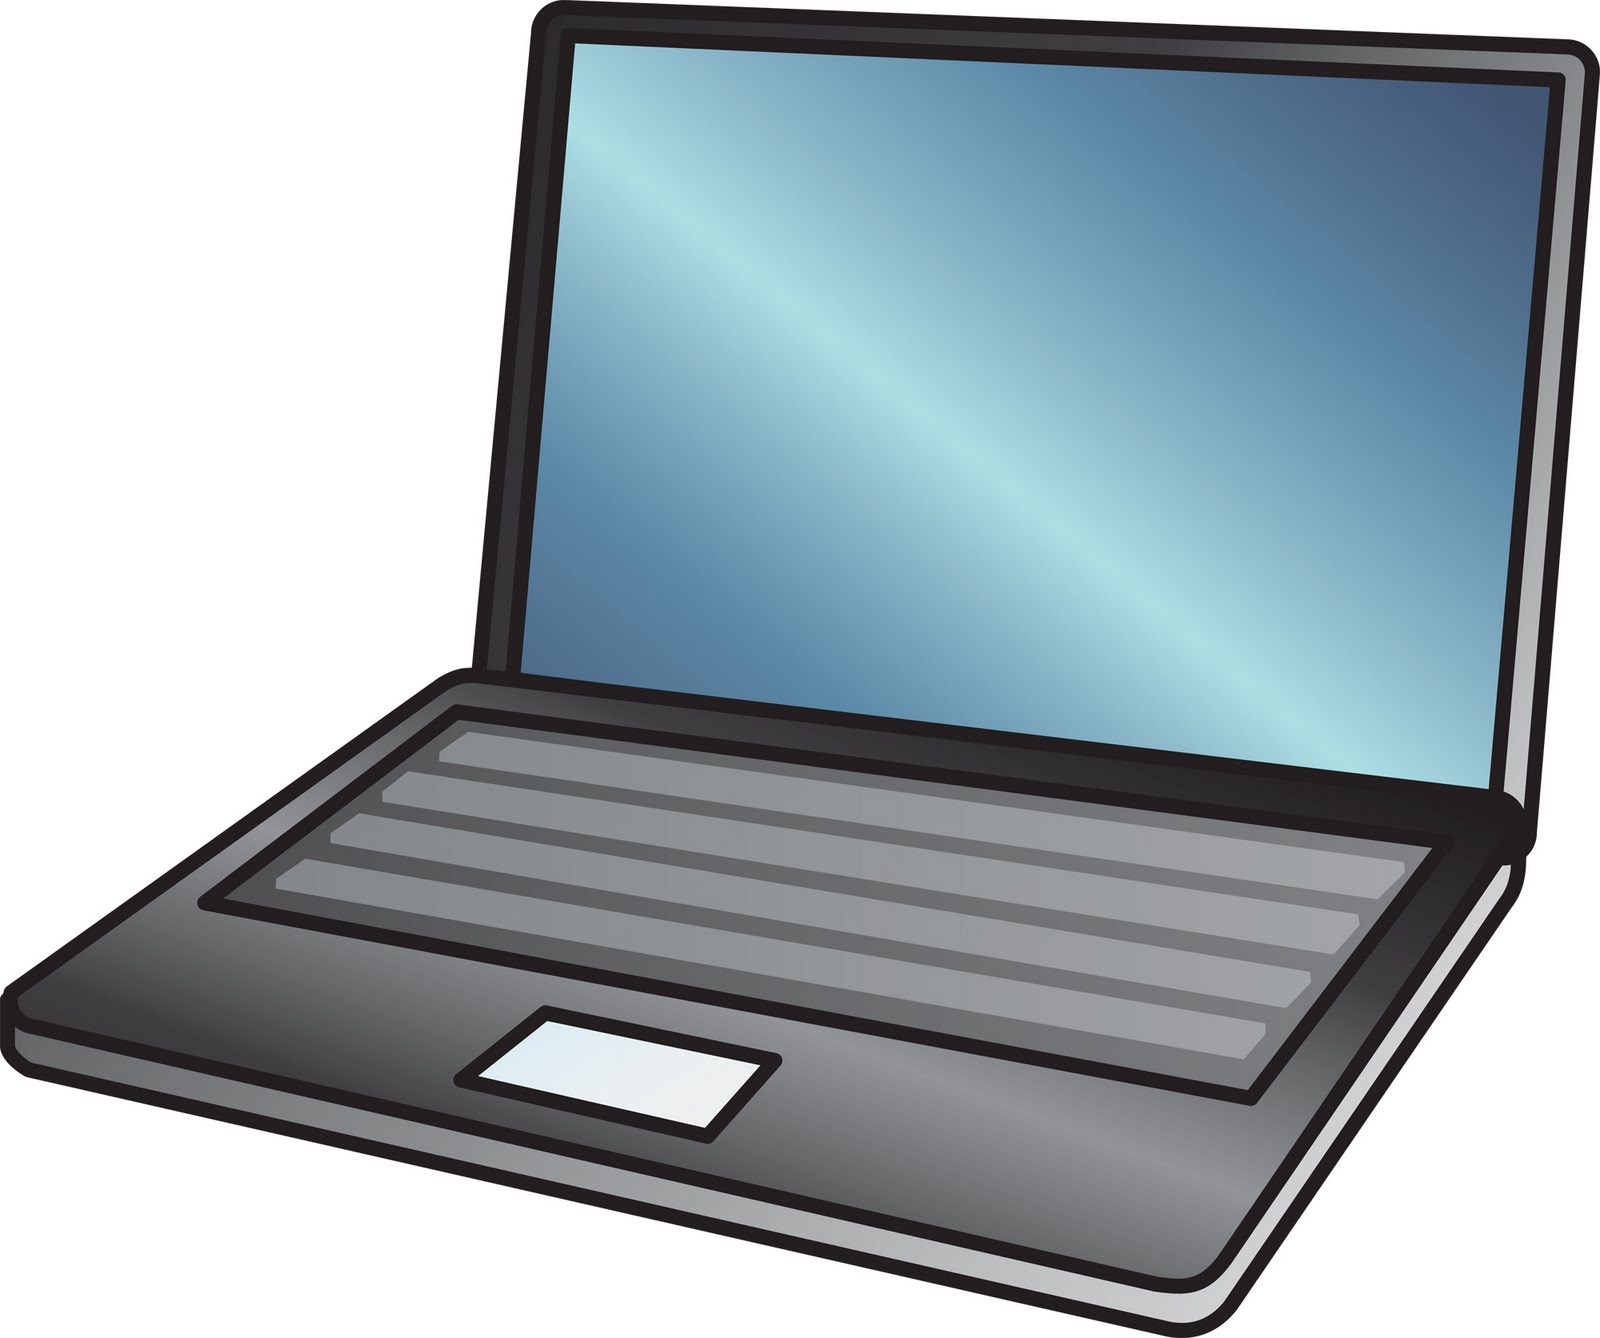 Laptop Computer Clipart Clipa - Clipart Laptop